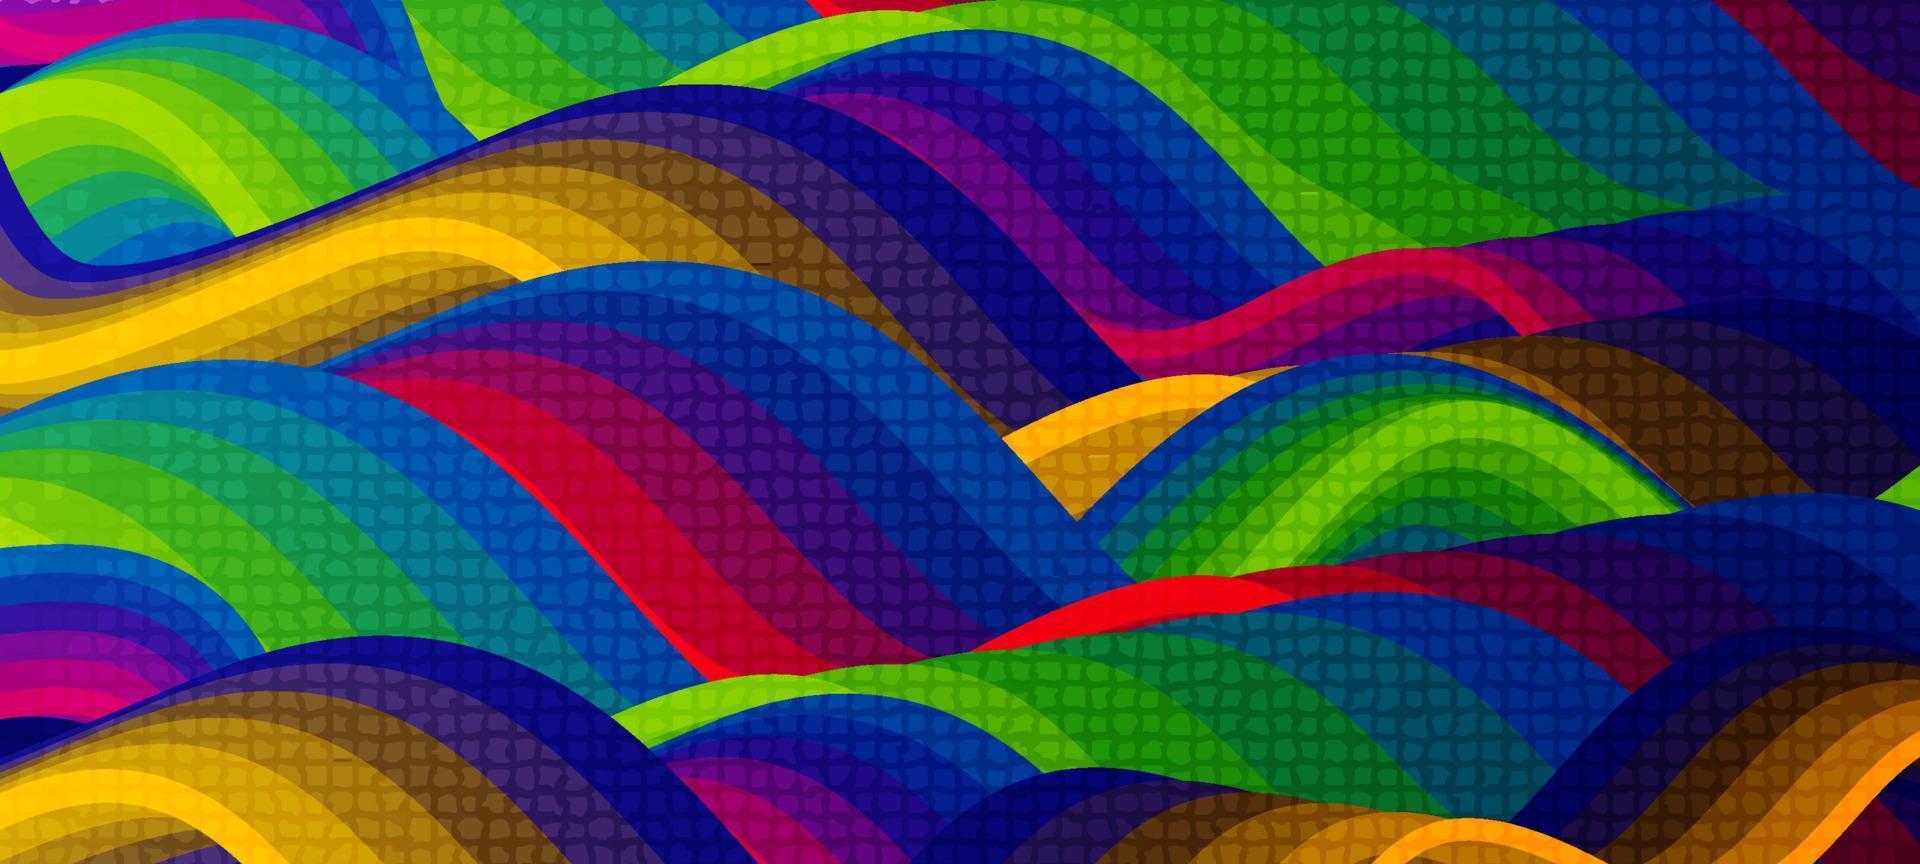 abstrakt färgrik regnbåge Vinka med mosaik- texturerad bakgrund vektor